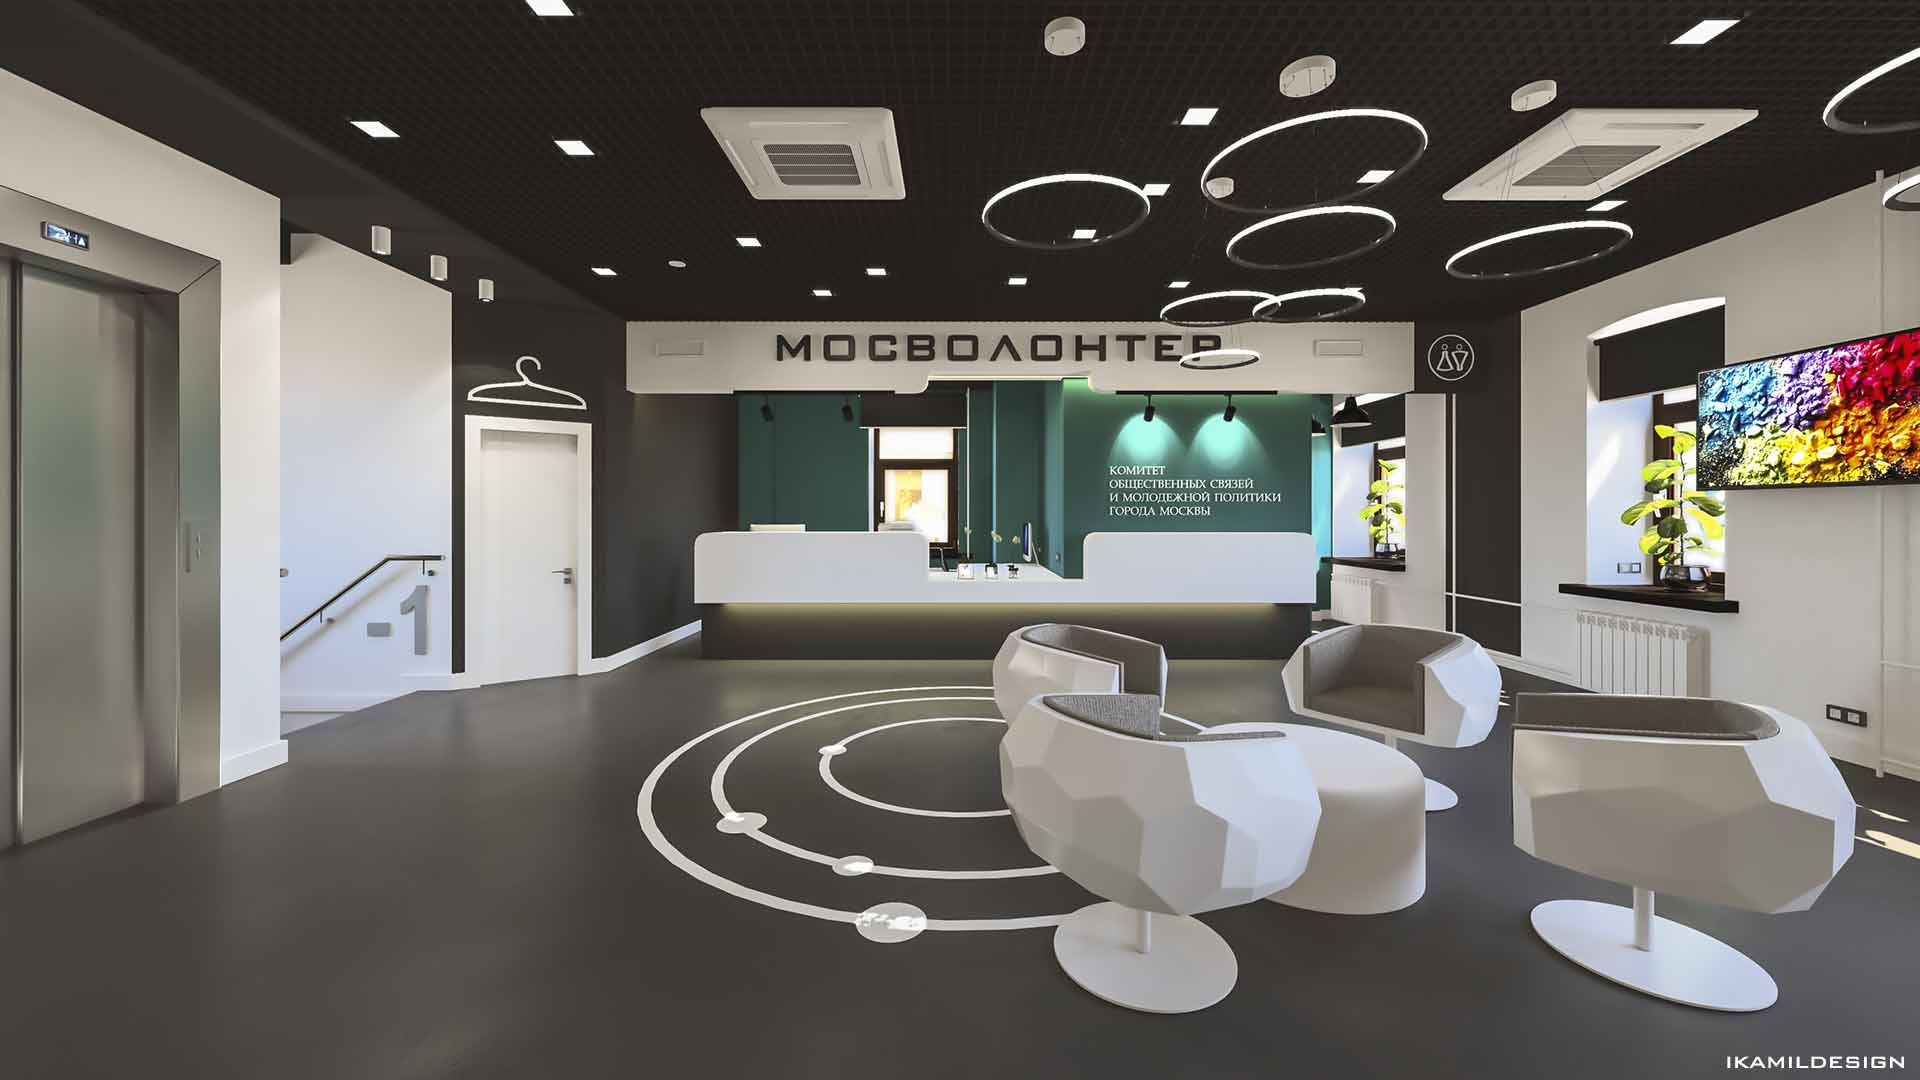 дизайн интерьера ресепшена офиса некоммерческой организации мосволонтер, ikamildesign